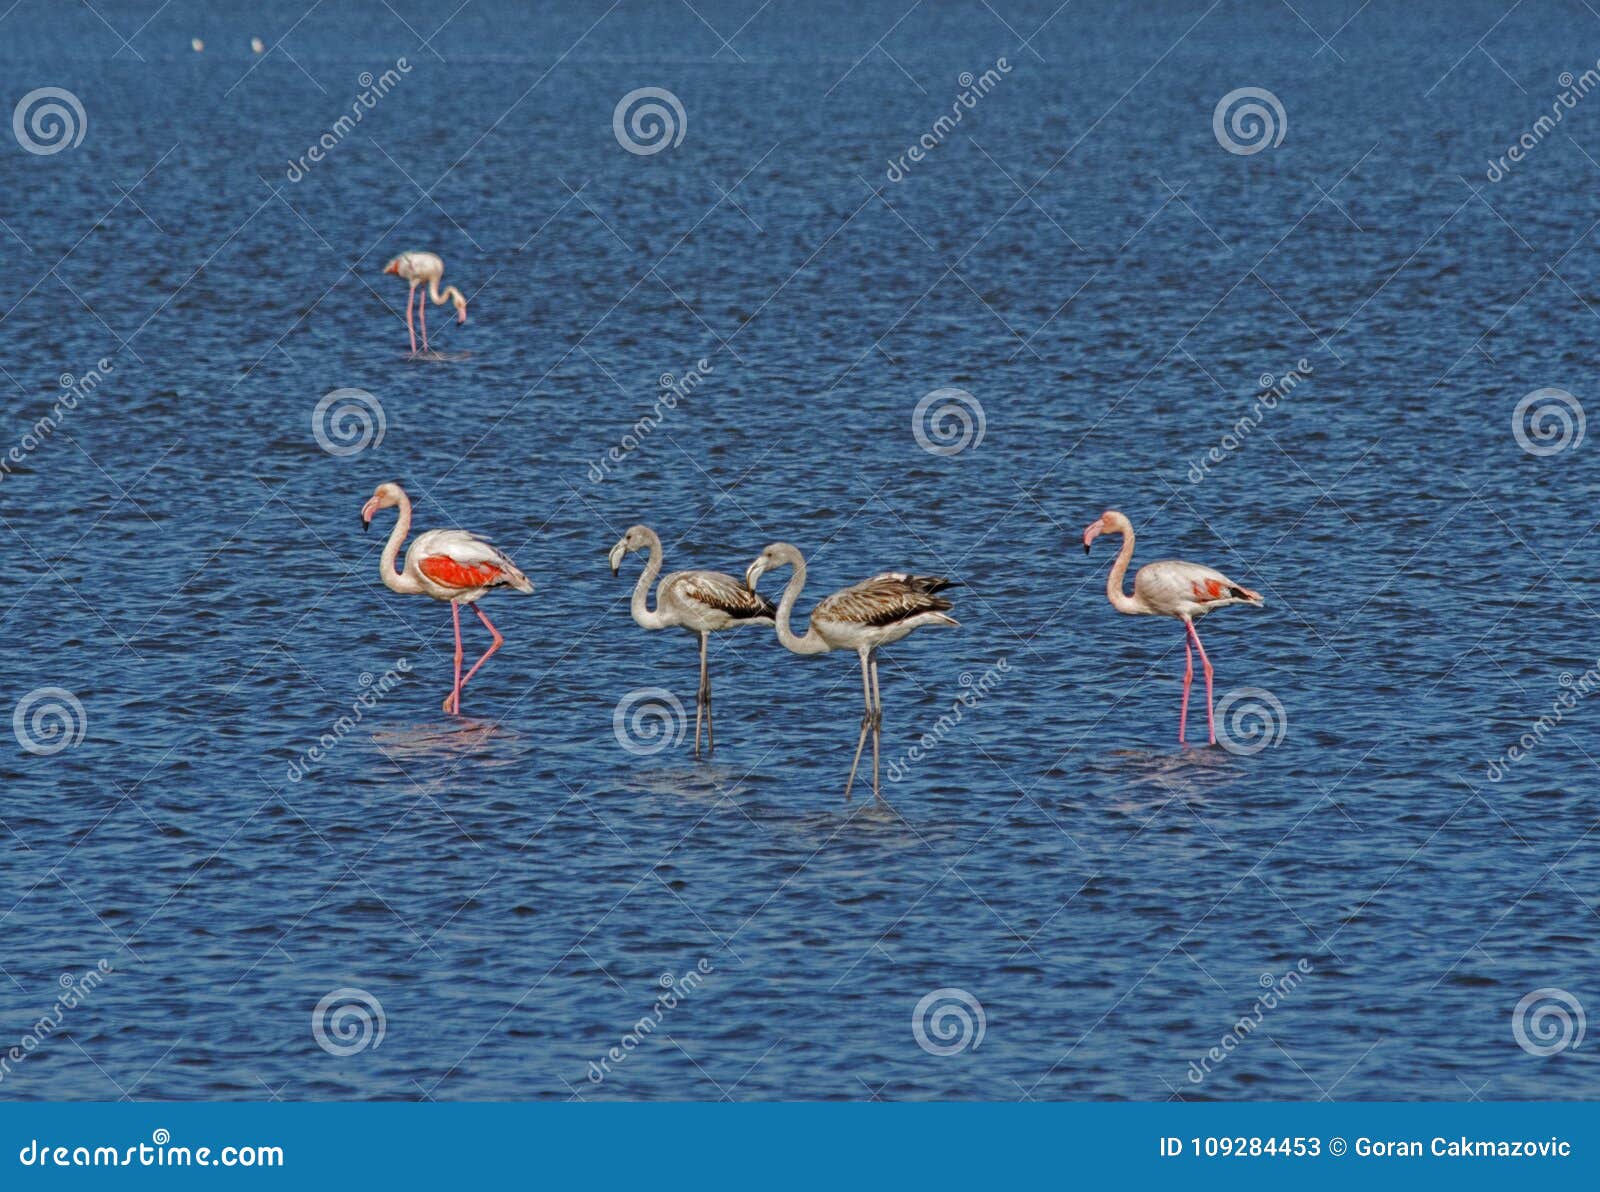 flamingos in an abandoned salt pans of ulcinj